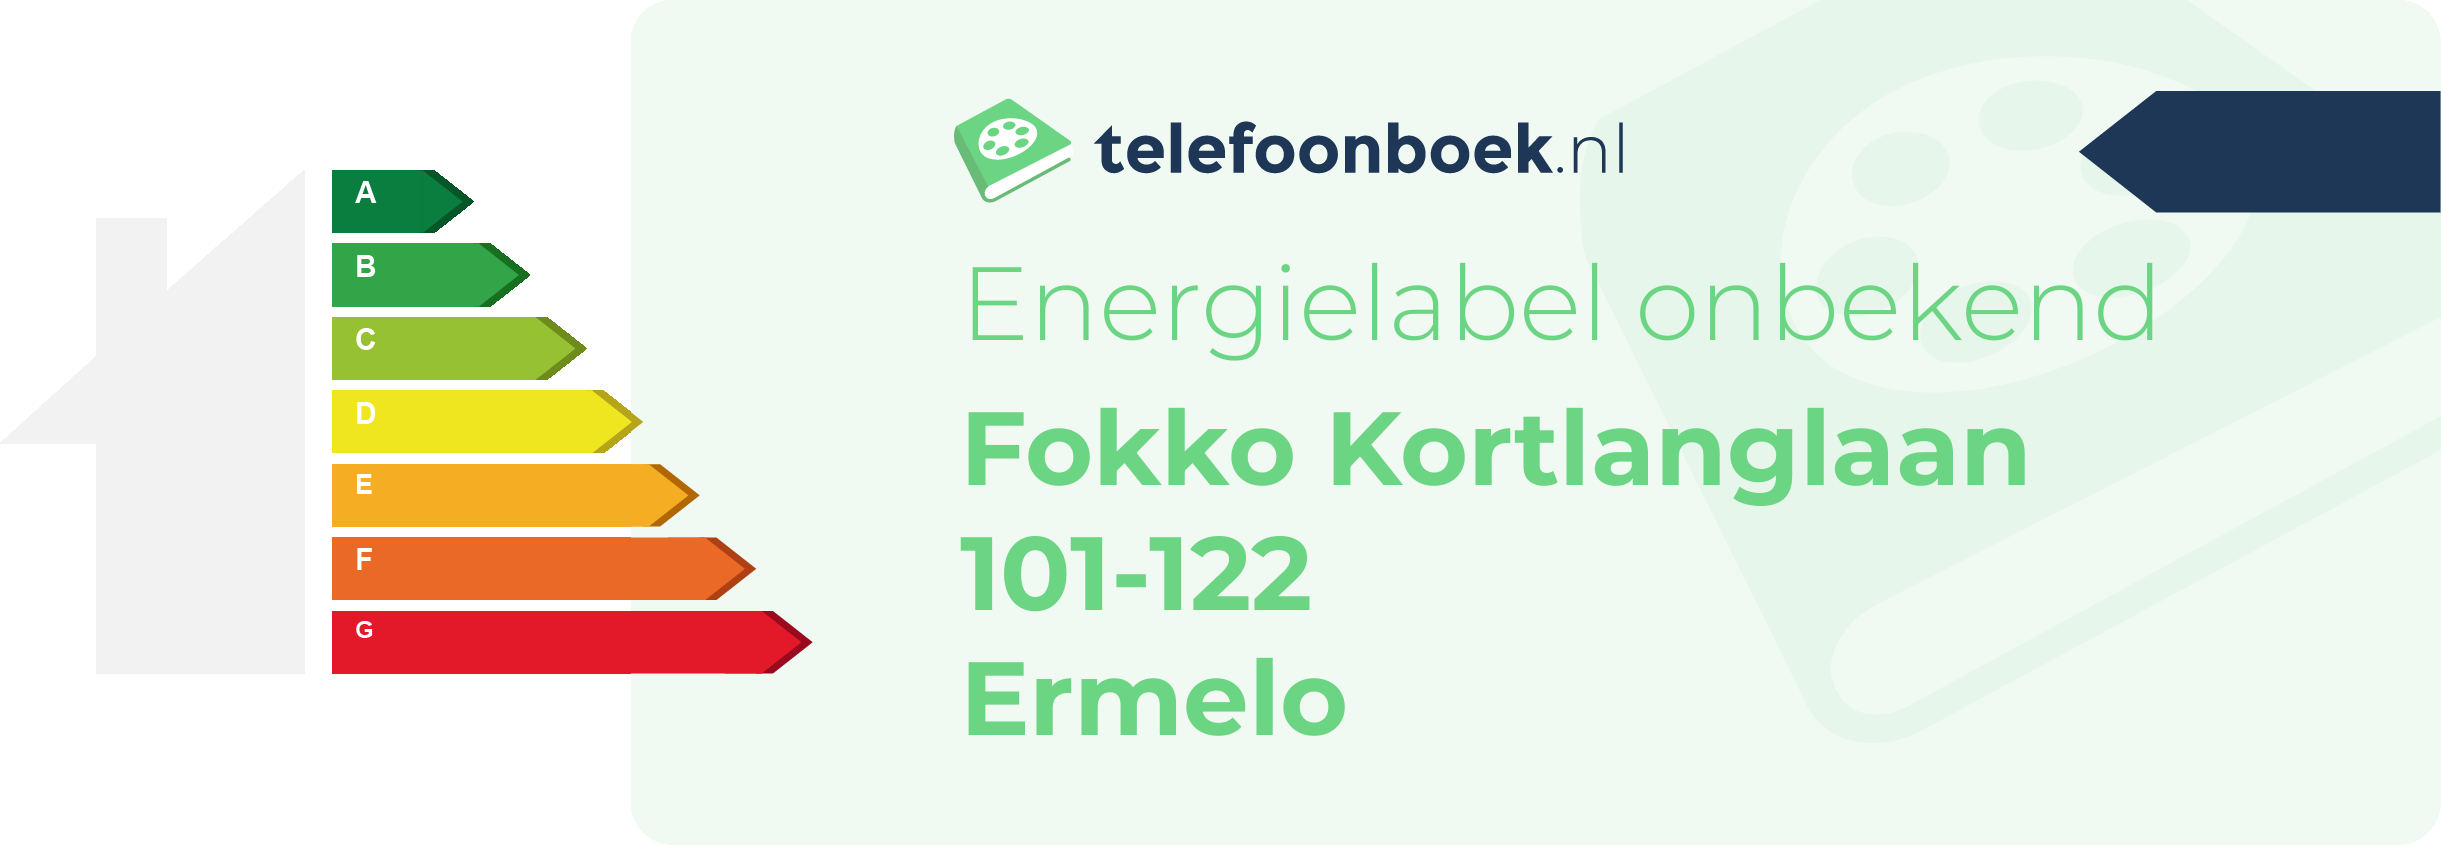 Energielabel Fokko Kortlanglaan 101-122 Ermelo